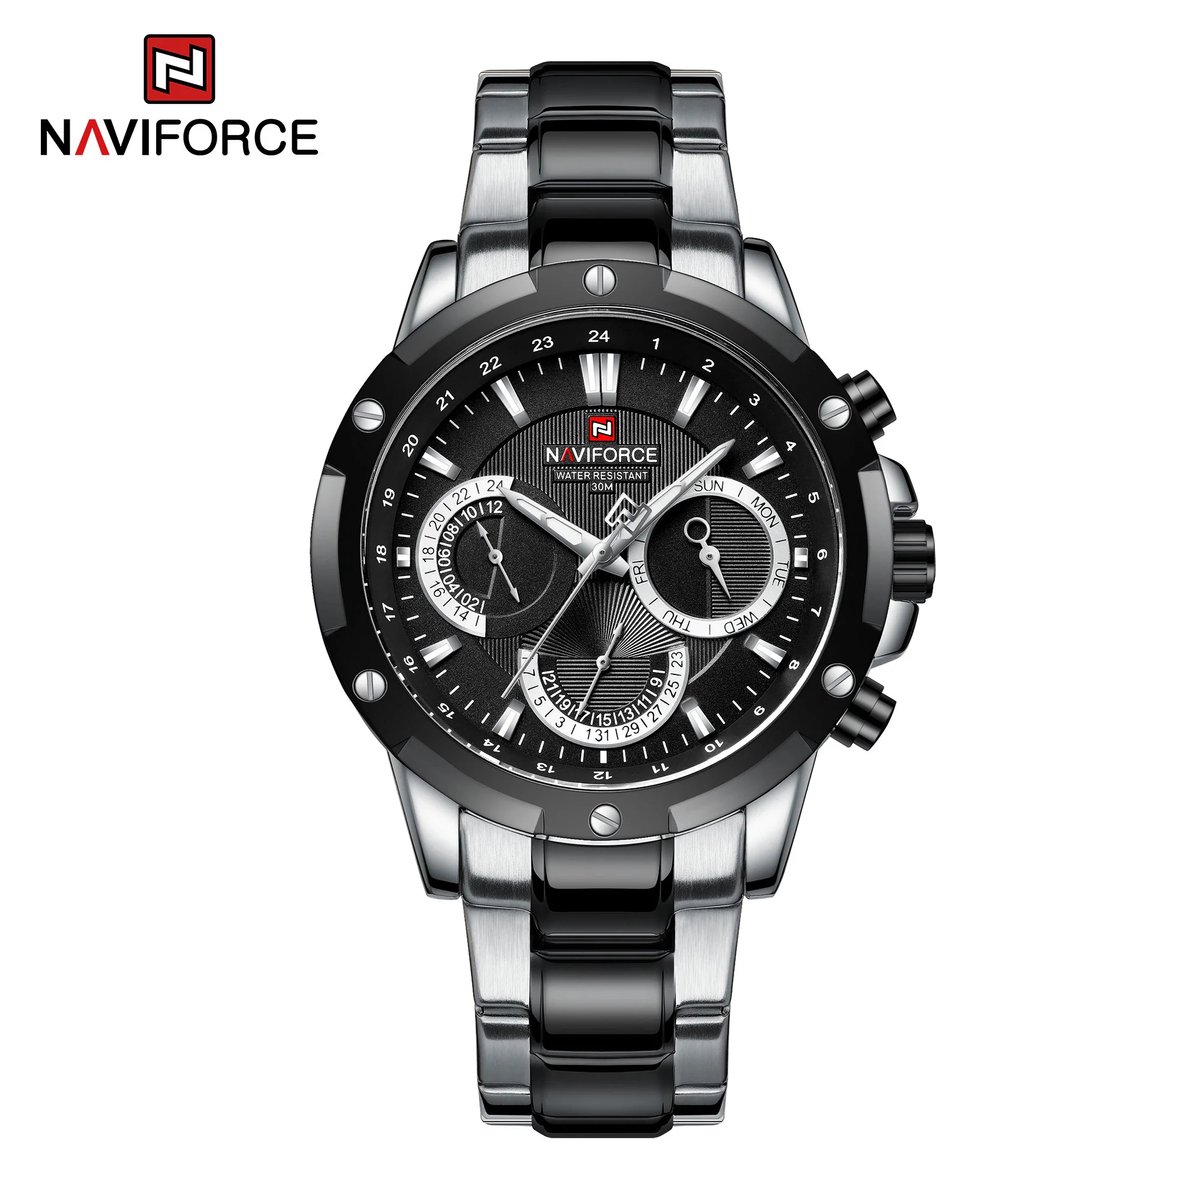 NAVIFORCE horloge voor mannen, met zilver met zwart metalen polsband, zwarte uurwerkkast en zwarte wijzerplaat ( model 9196S SB ), verpakt in mooie geschenkdoos